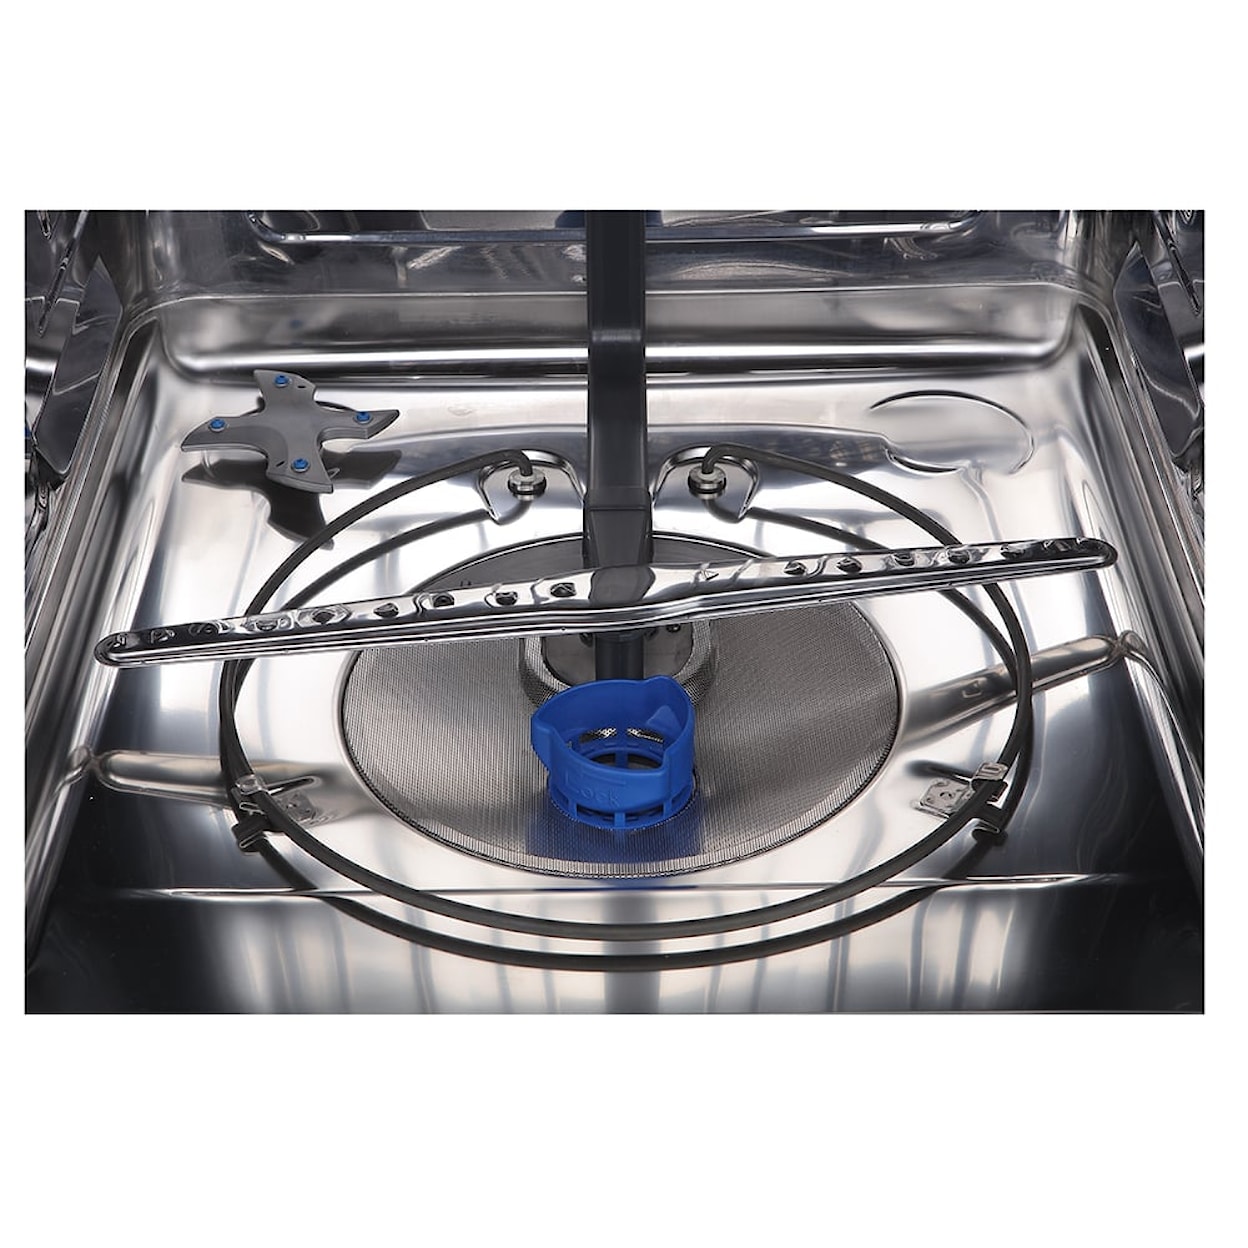 GE Appliances Dishwashers 24" Front Control White Dishwasher